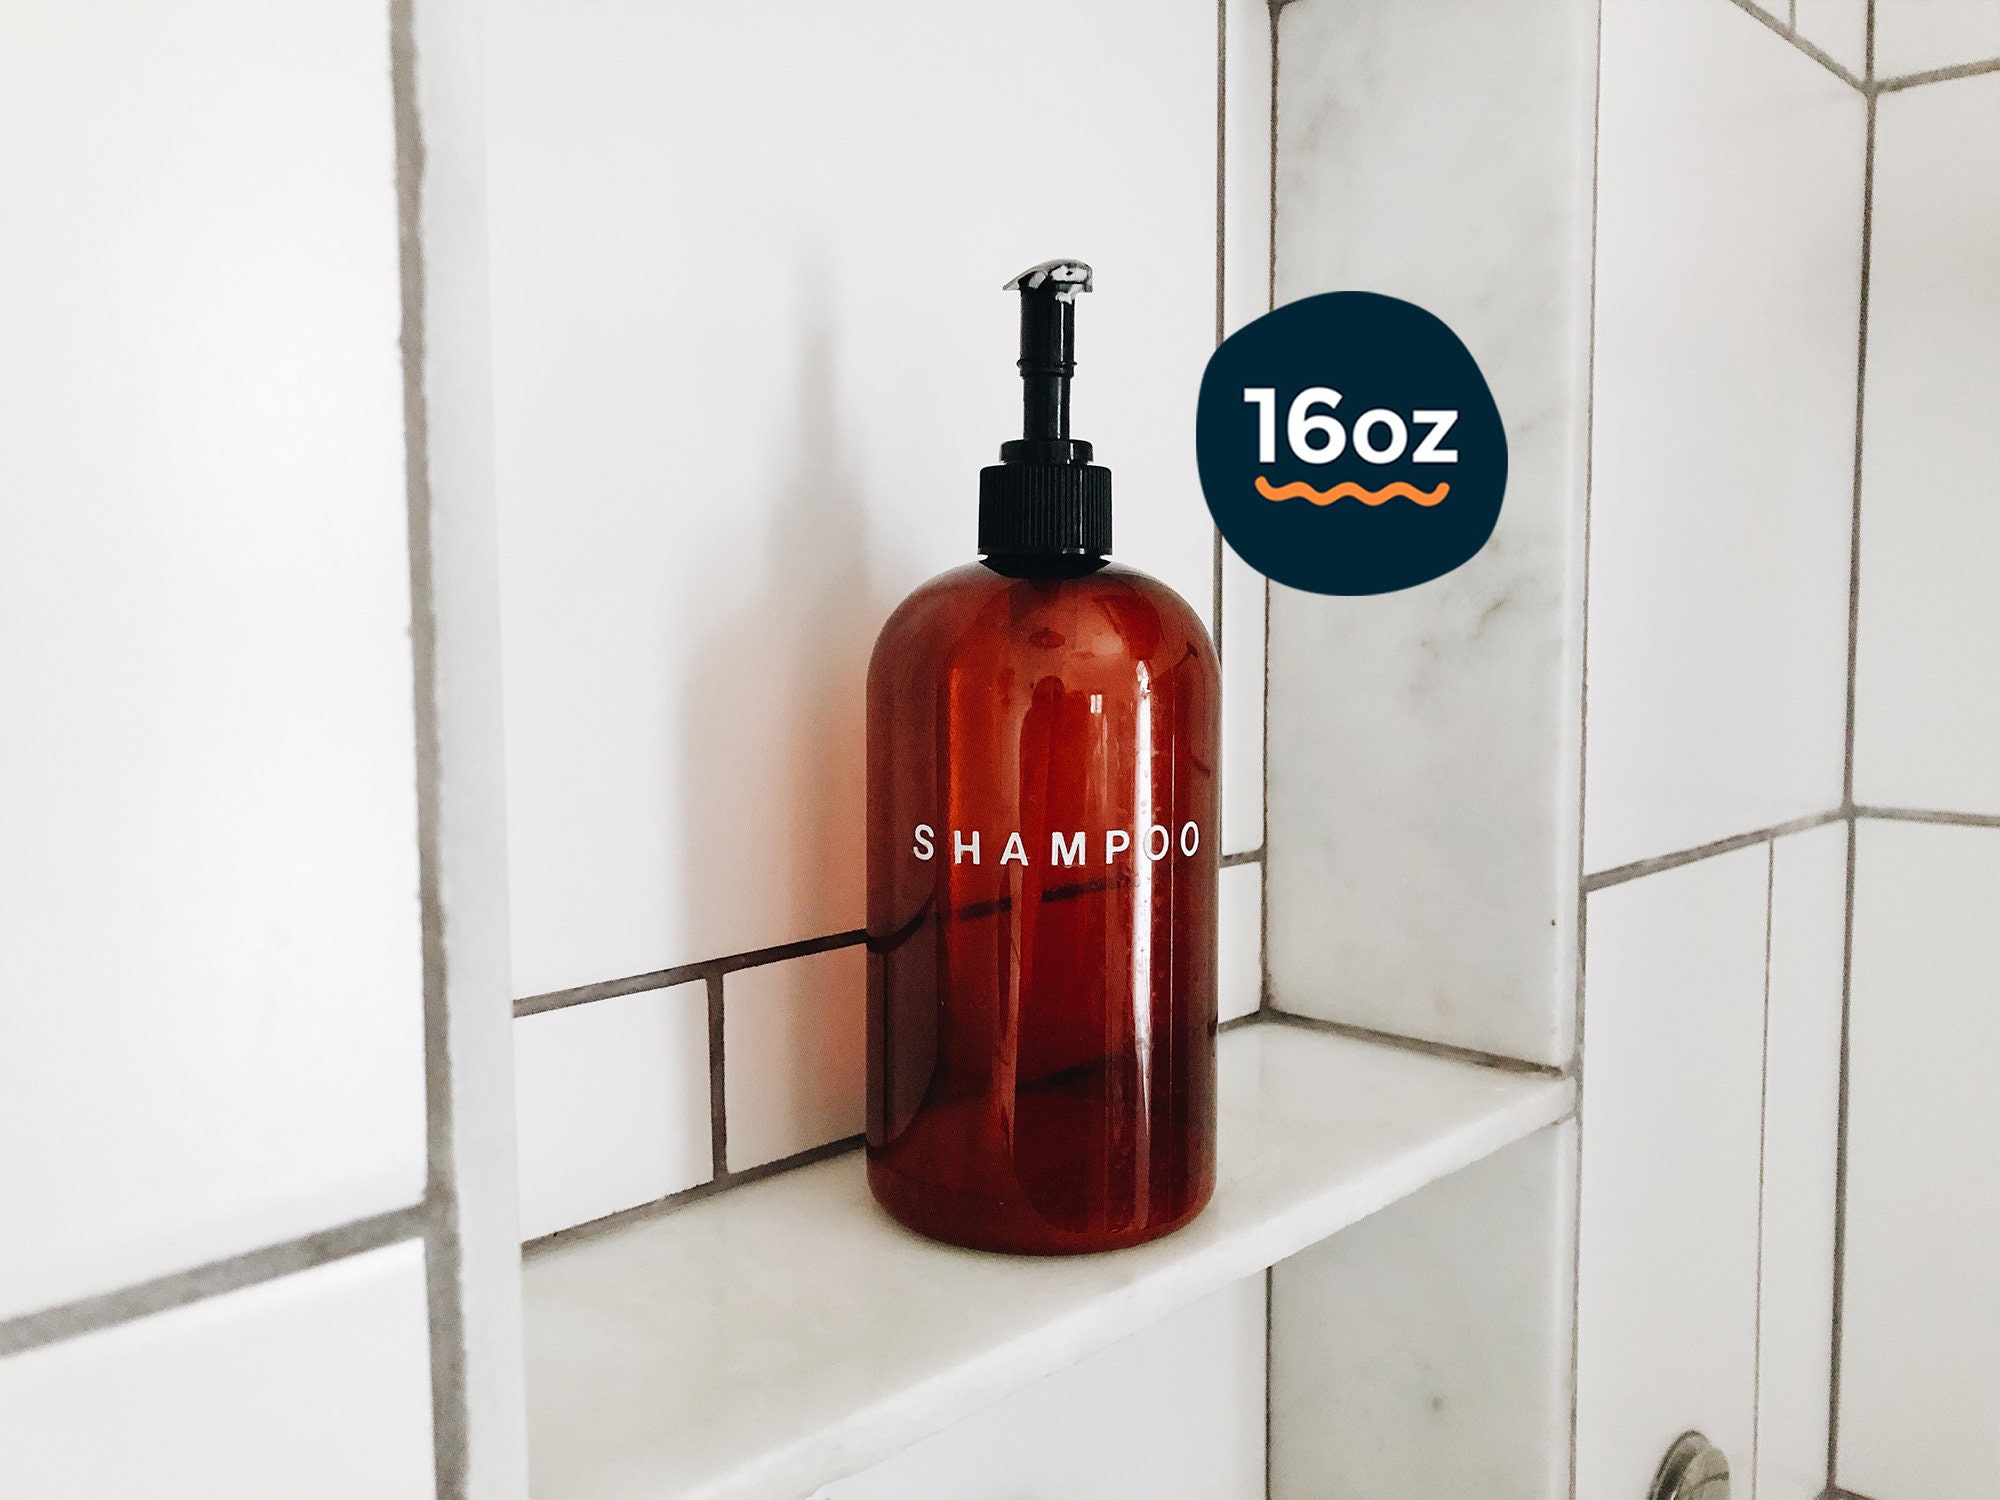 dans ubemandede Shredded 16oz Shampoo Bottle in Amber Plastic Amber Shampoo Dispenser - Etsy